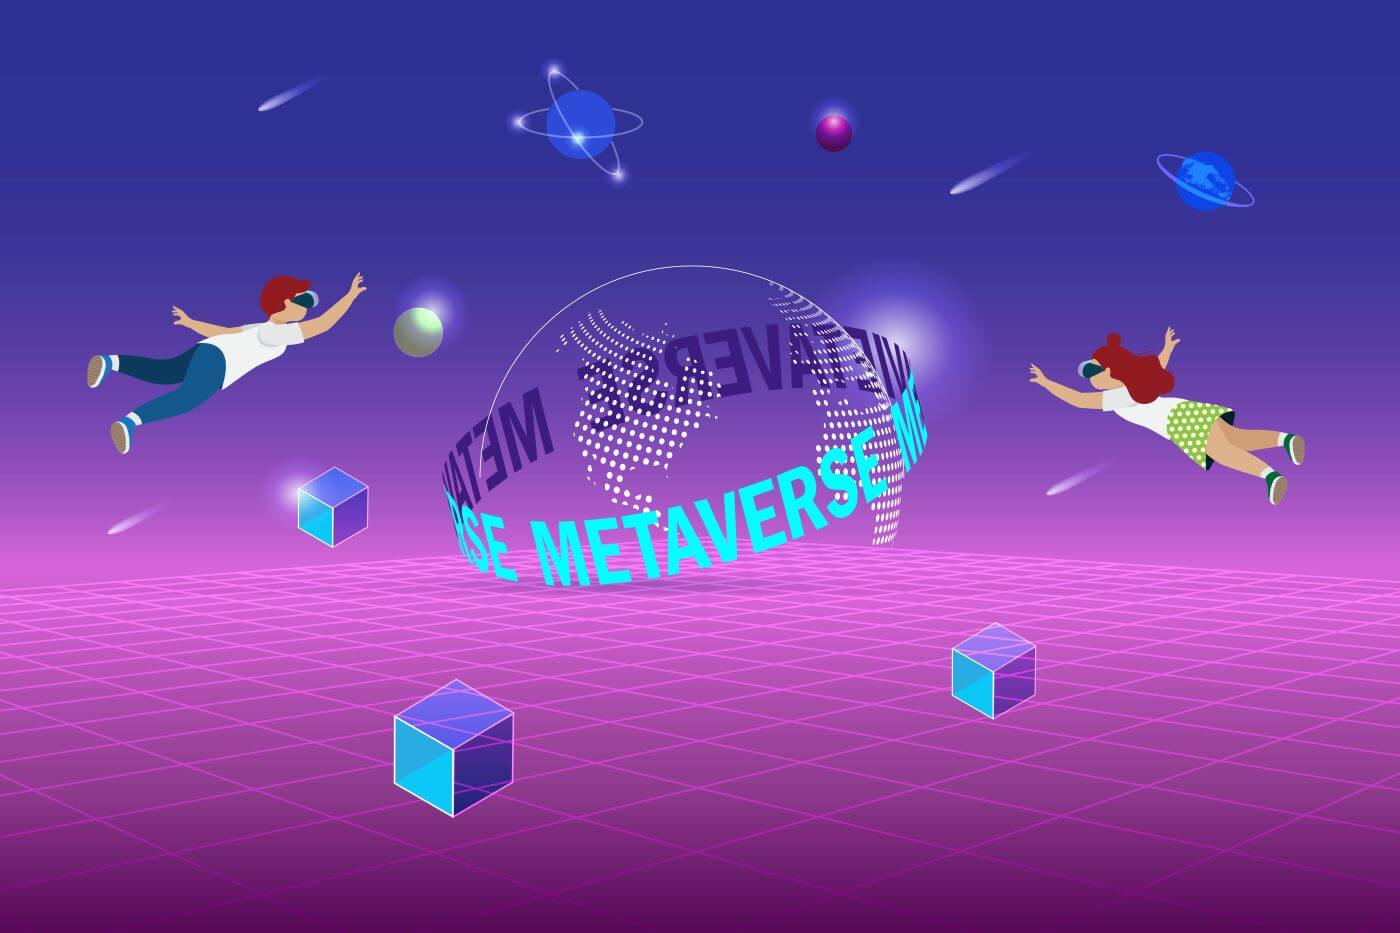 图片展示了两个卡通人物在充满未来感的虚拟空间中飘浮，四周有浮动的几何体，中间出现“METAVERSE”字样的半透明球体。